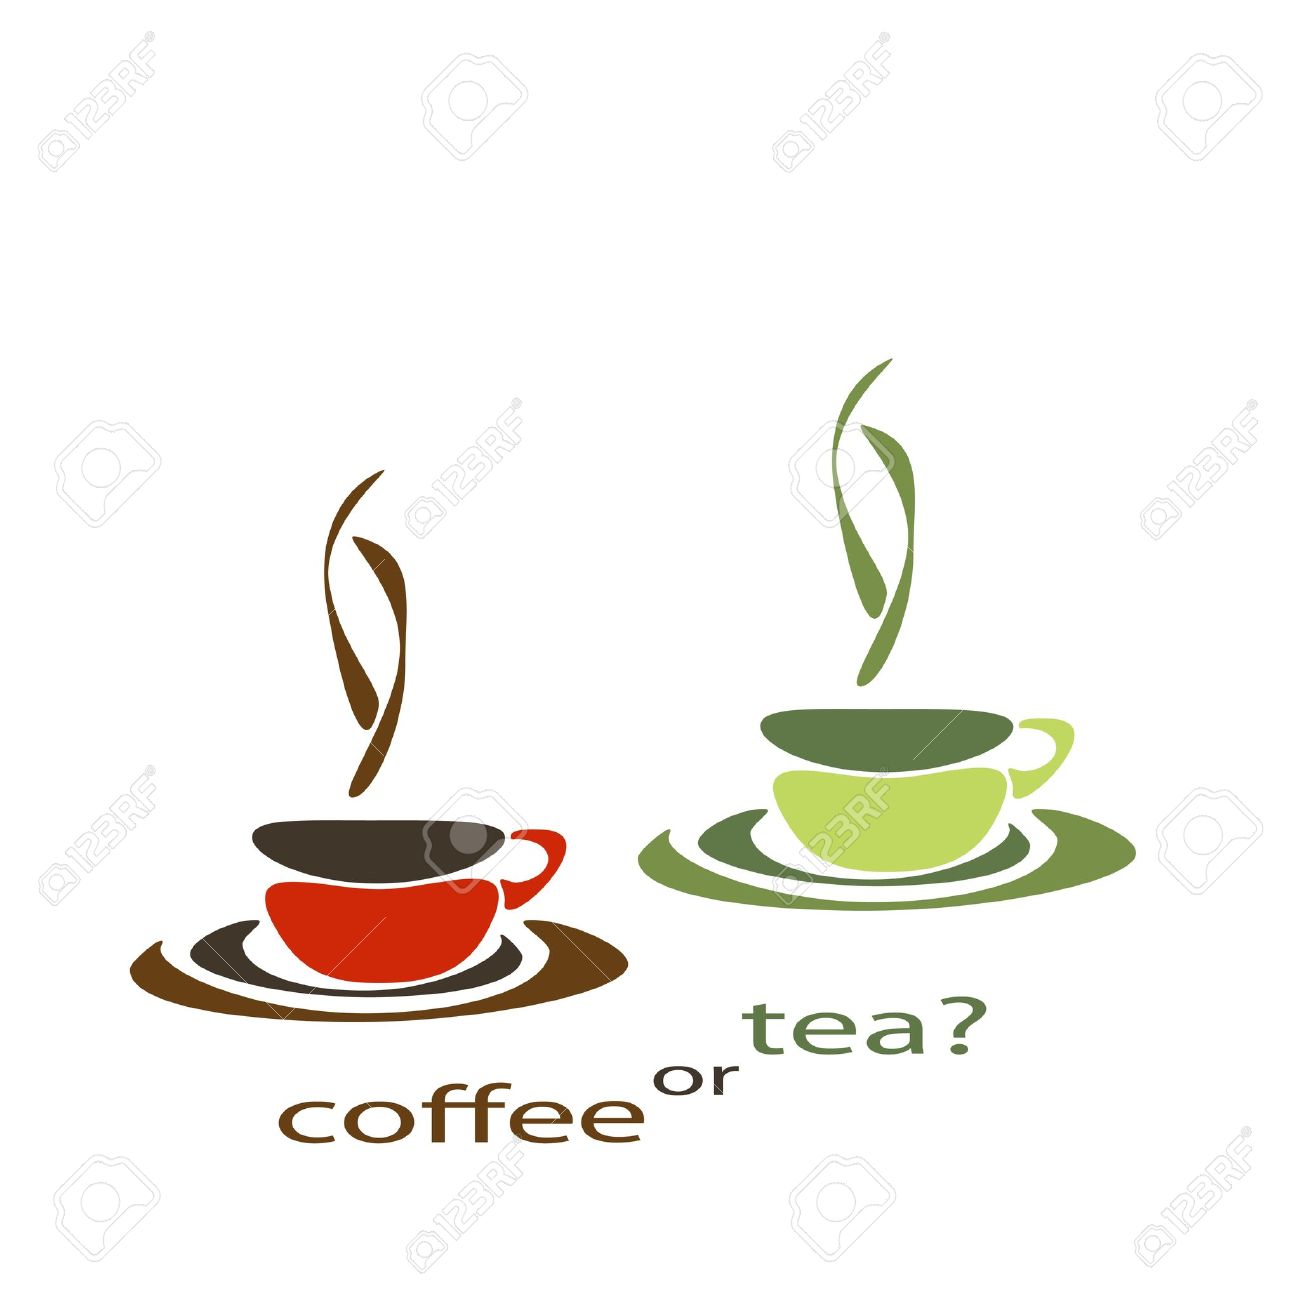 Tea and coffee.